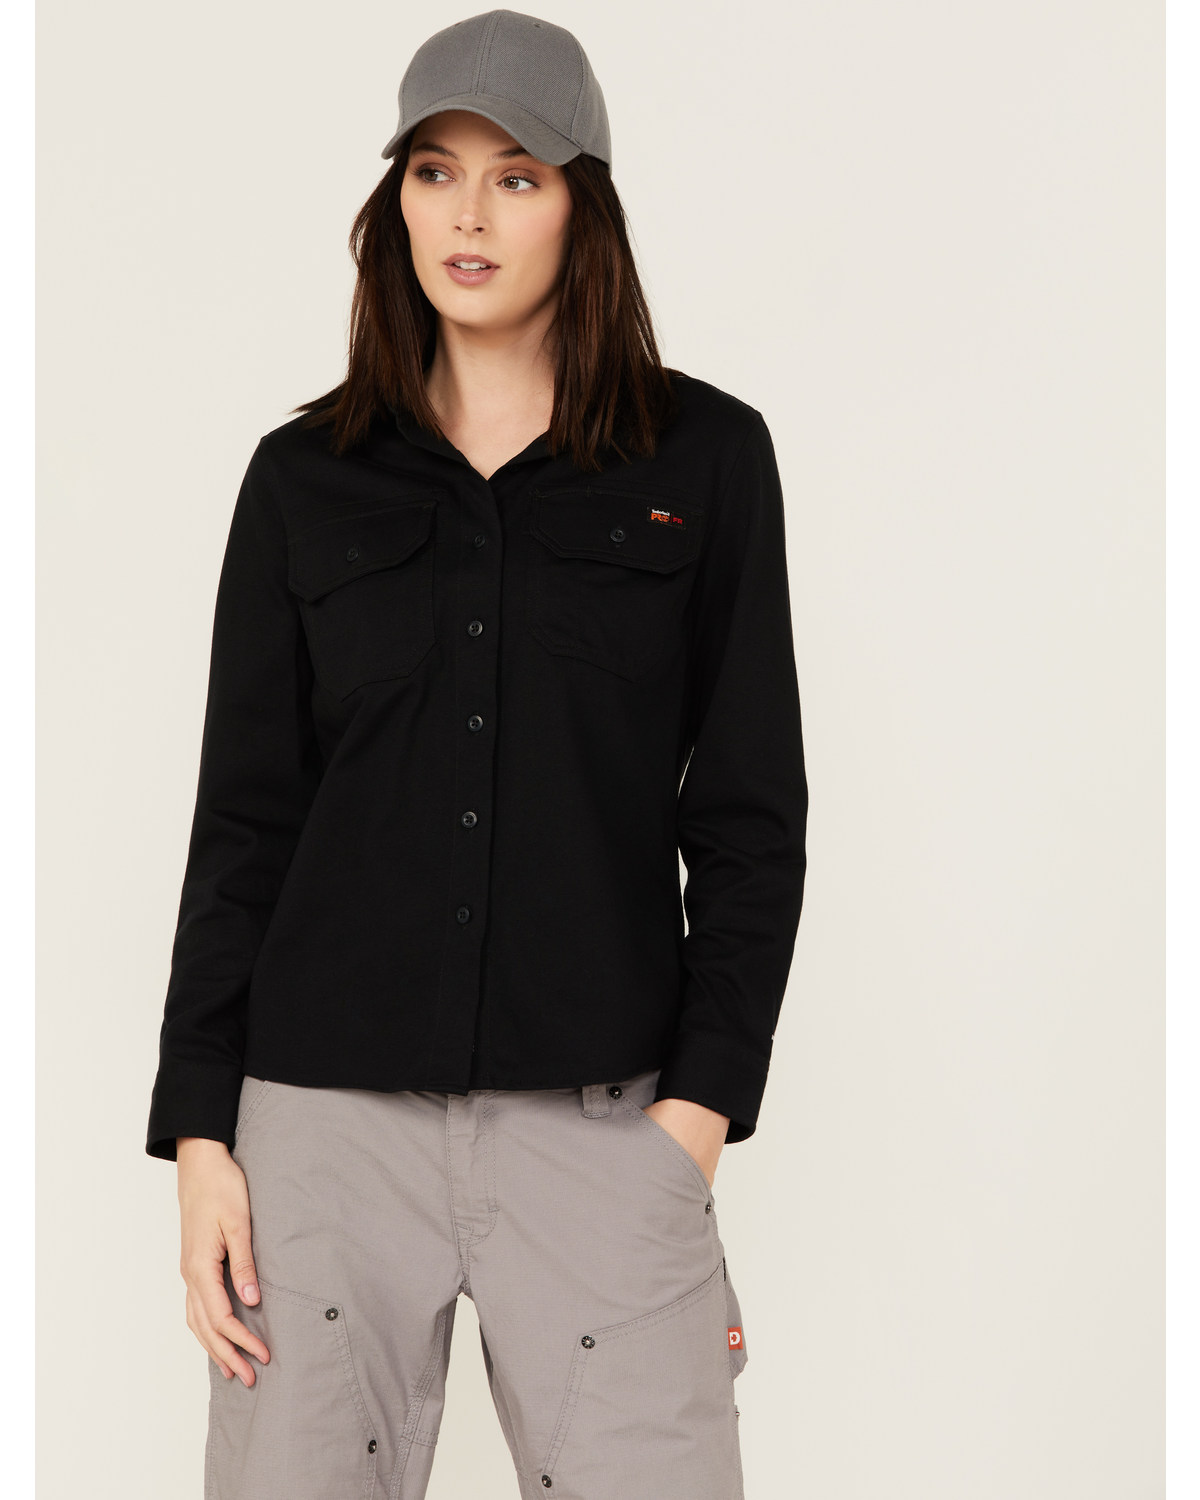 Timberland Pro Women's FR Cotton Core Button-Down Work Shirt